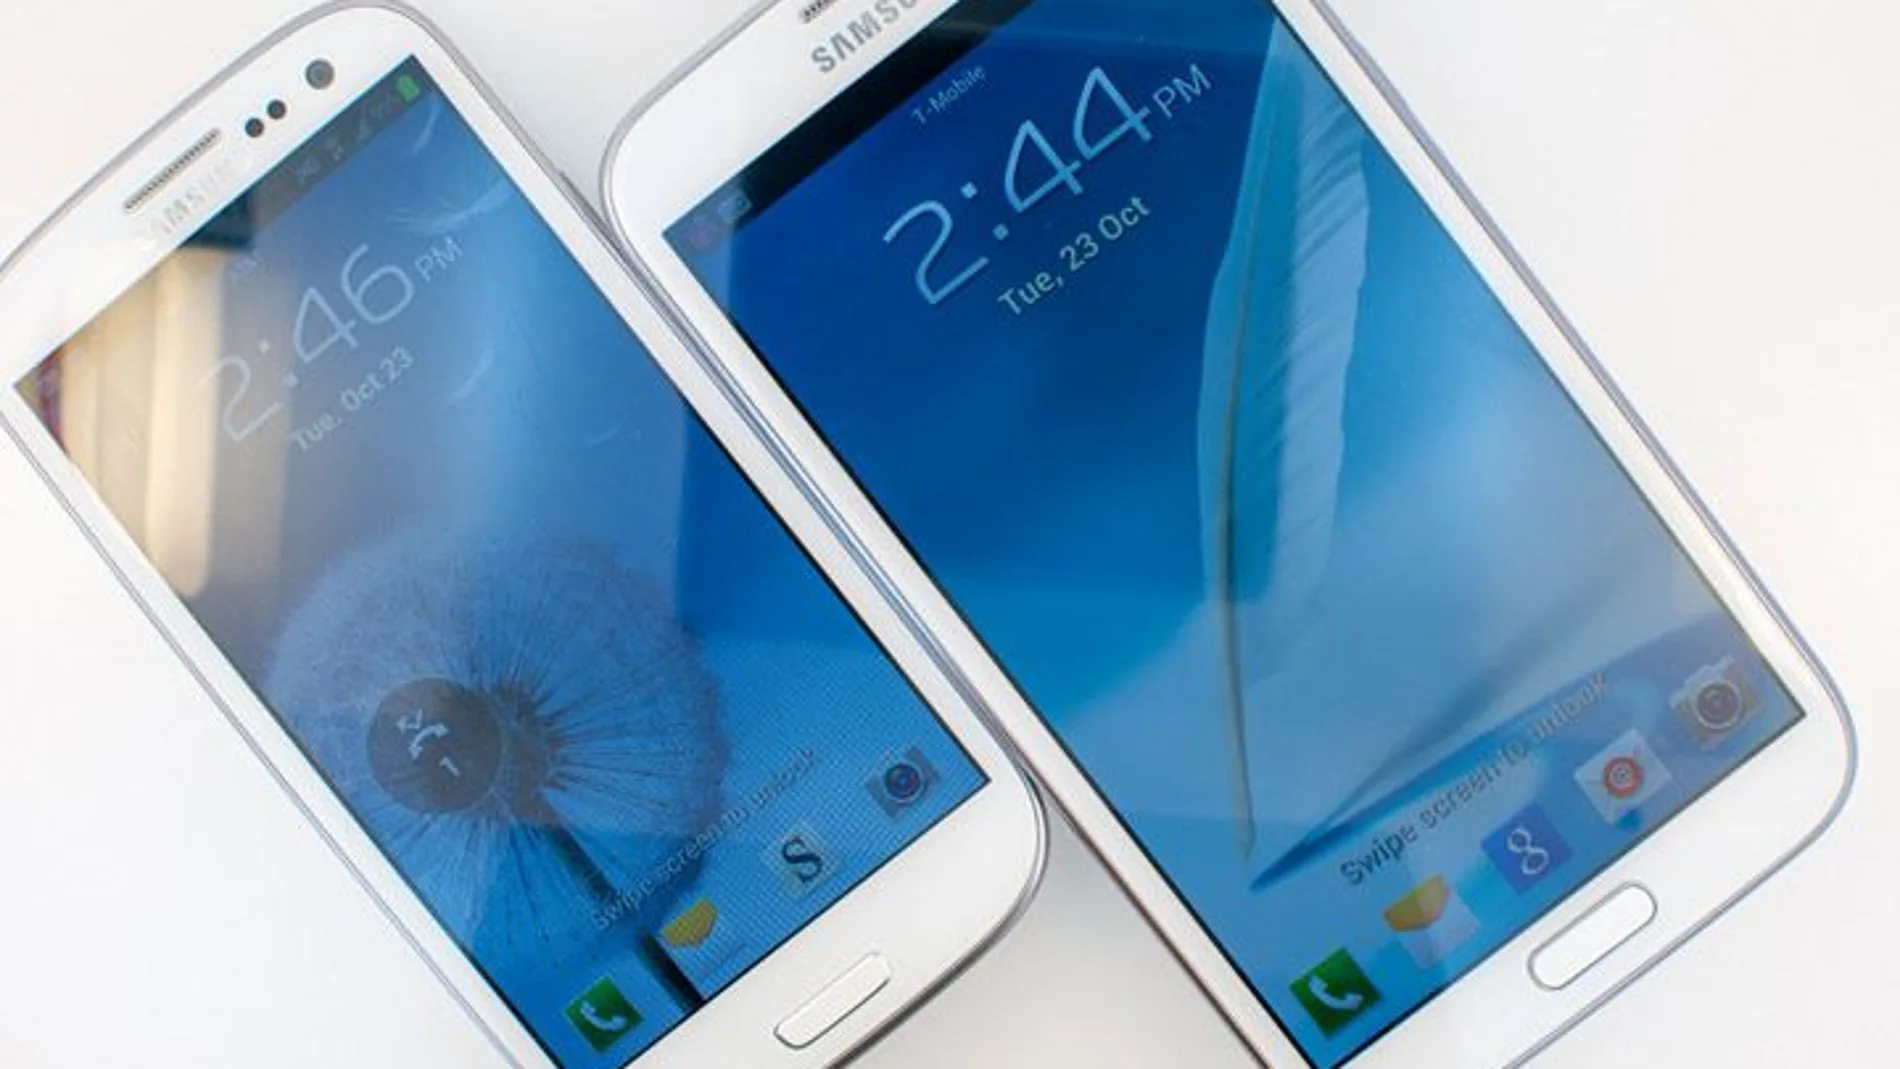 Samsung anuncia Galaxy Mega, su 'smartphone' más grande con 6,3 pulgadas